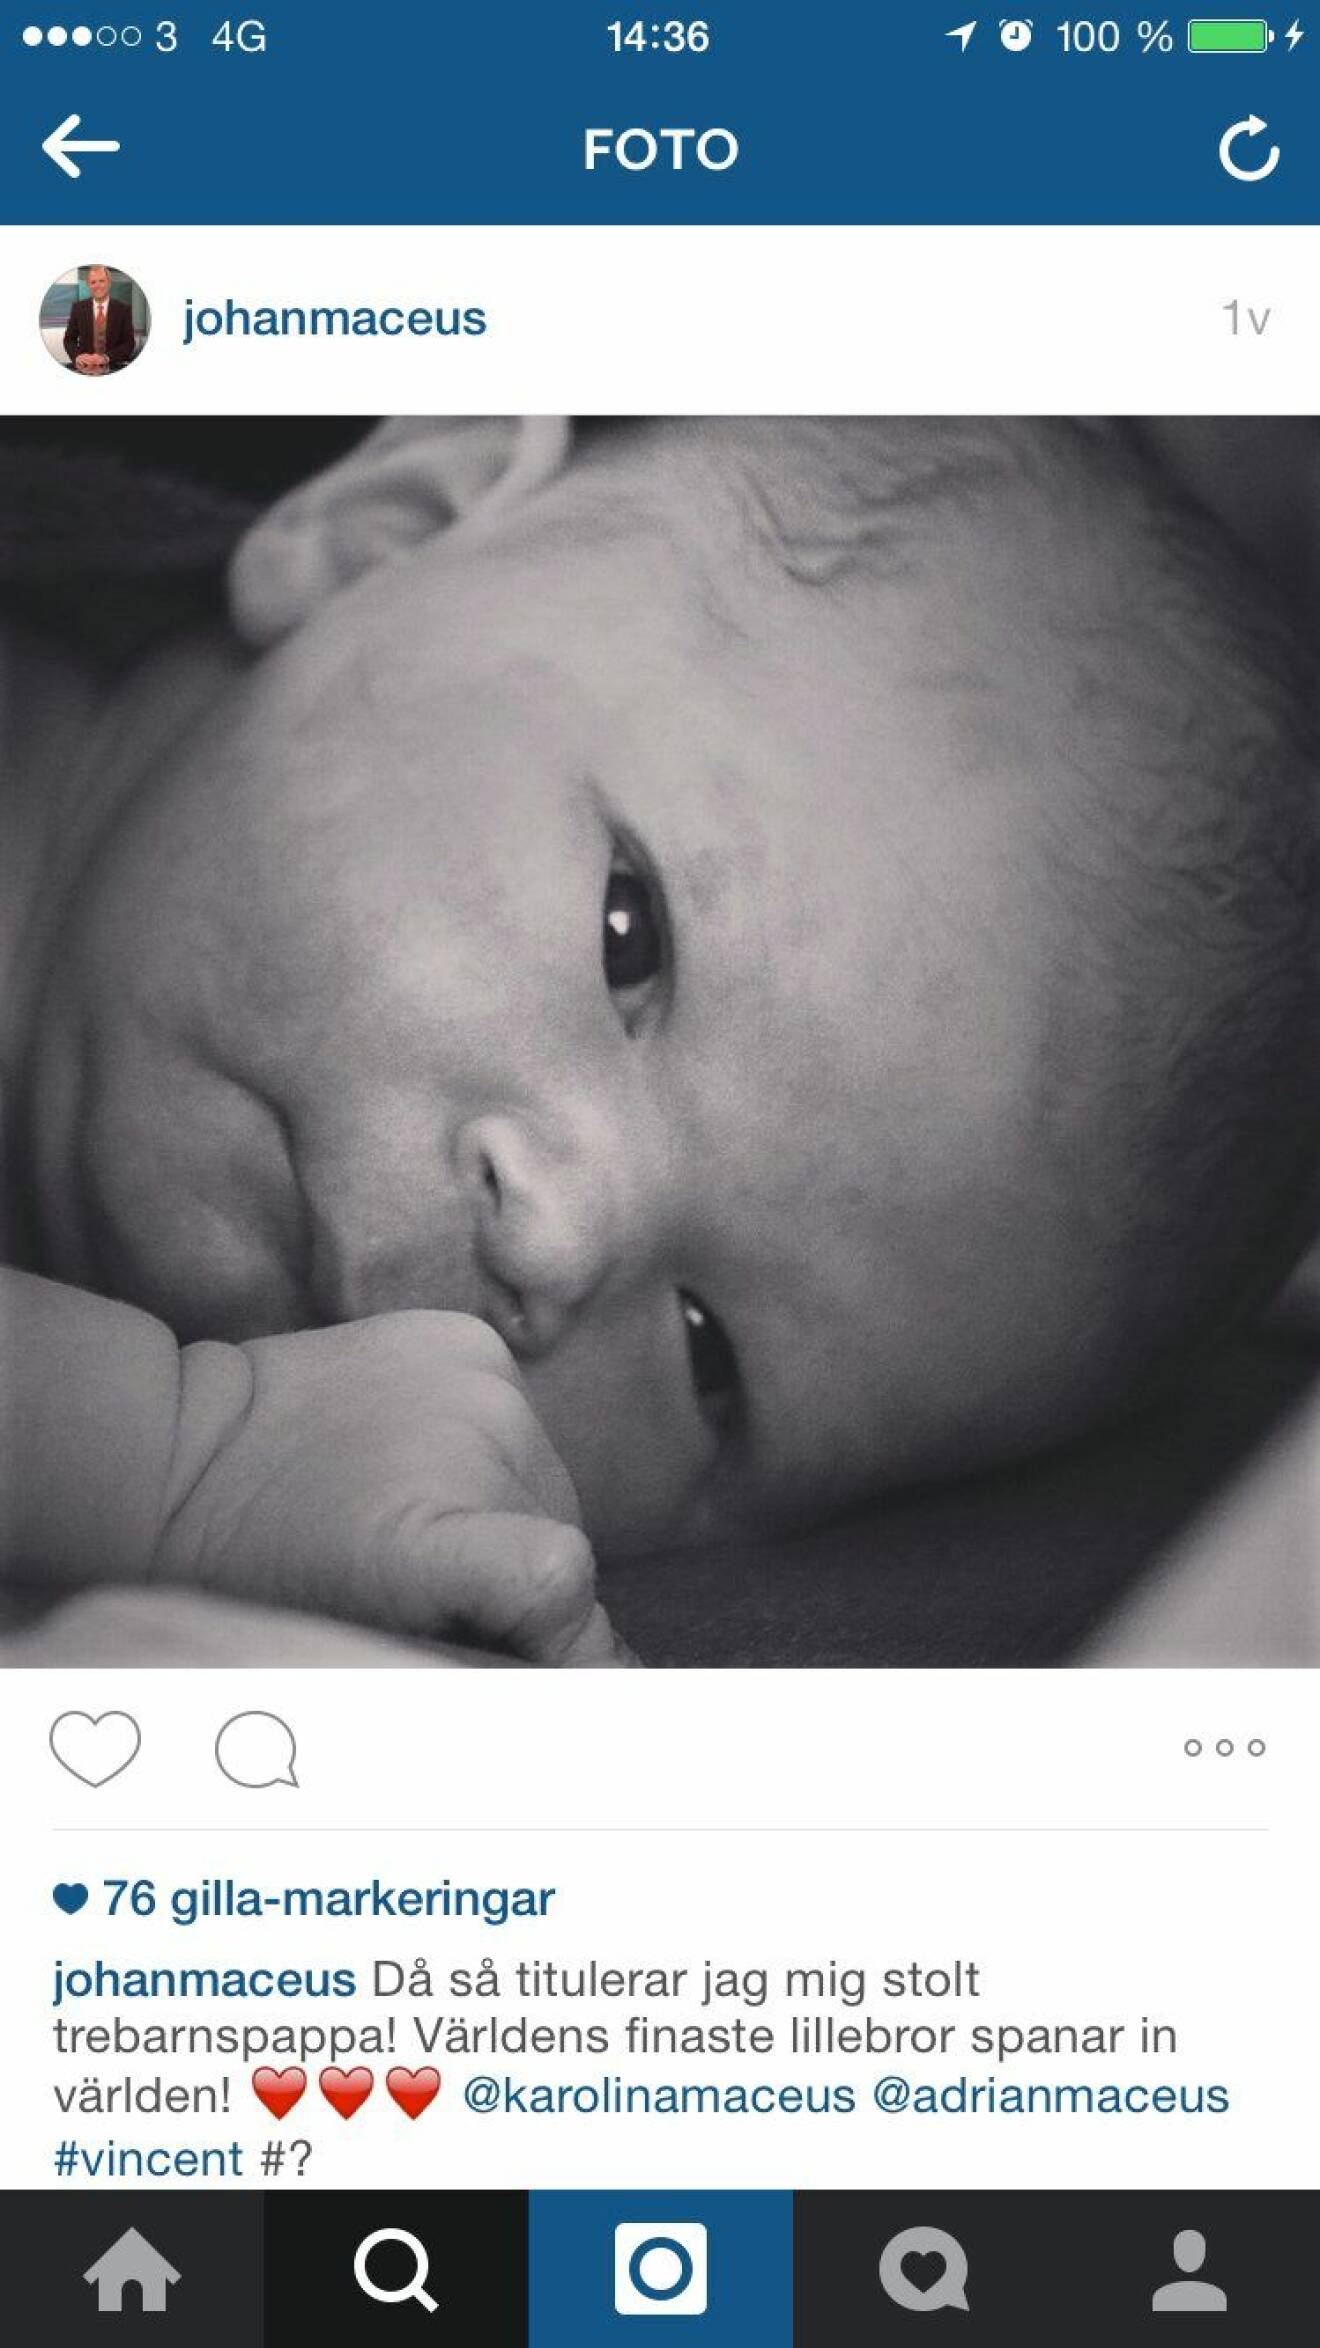 Johan Maceus skrev om babylyckan på Instagram.